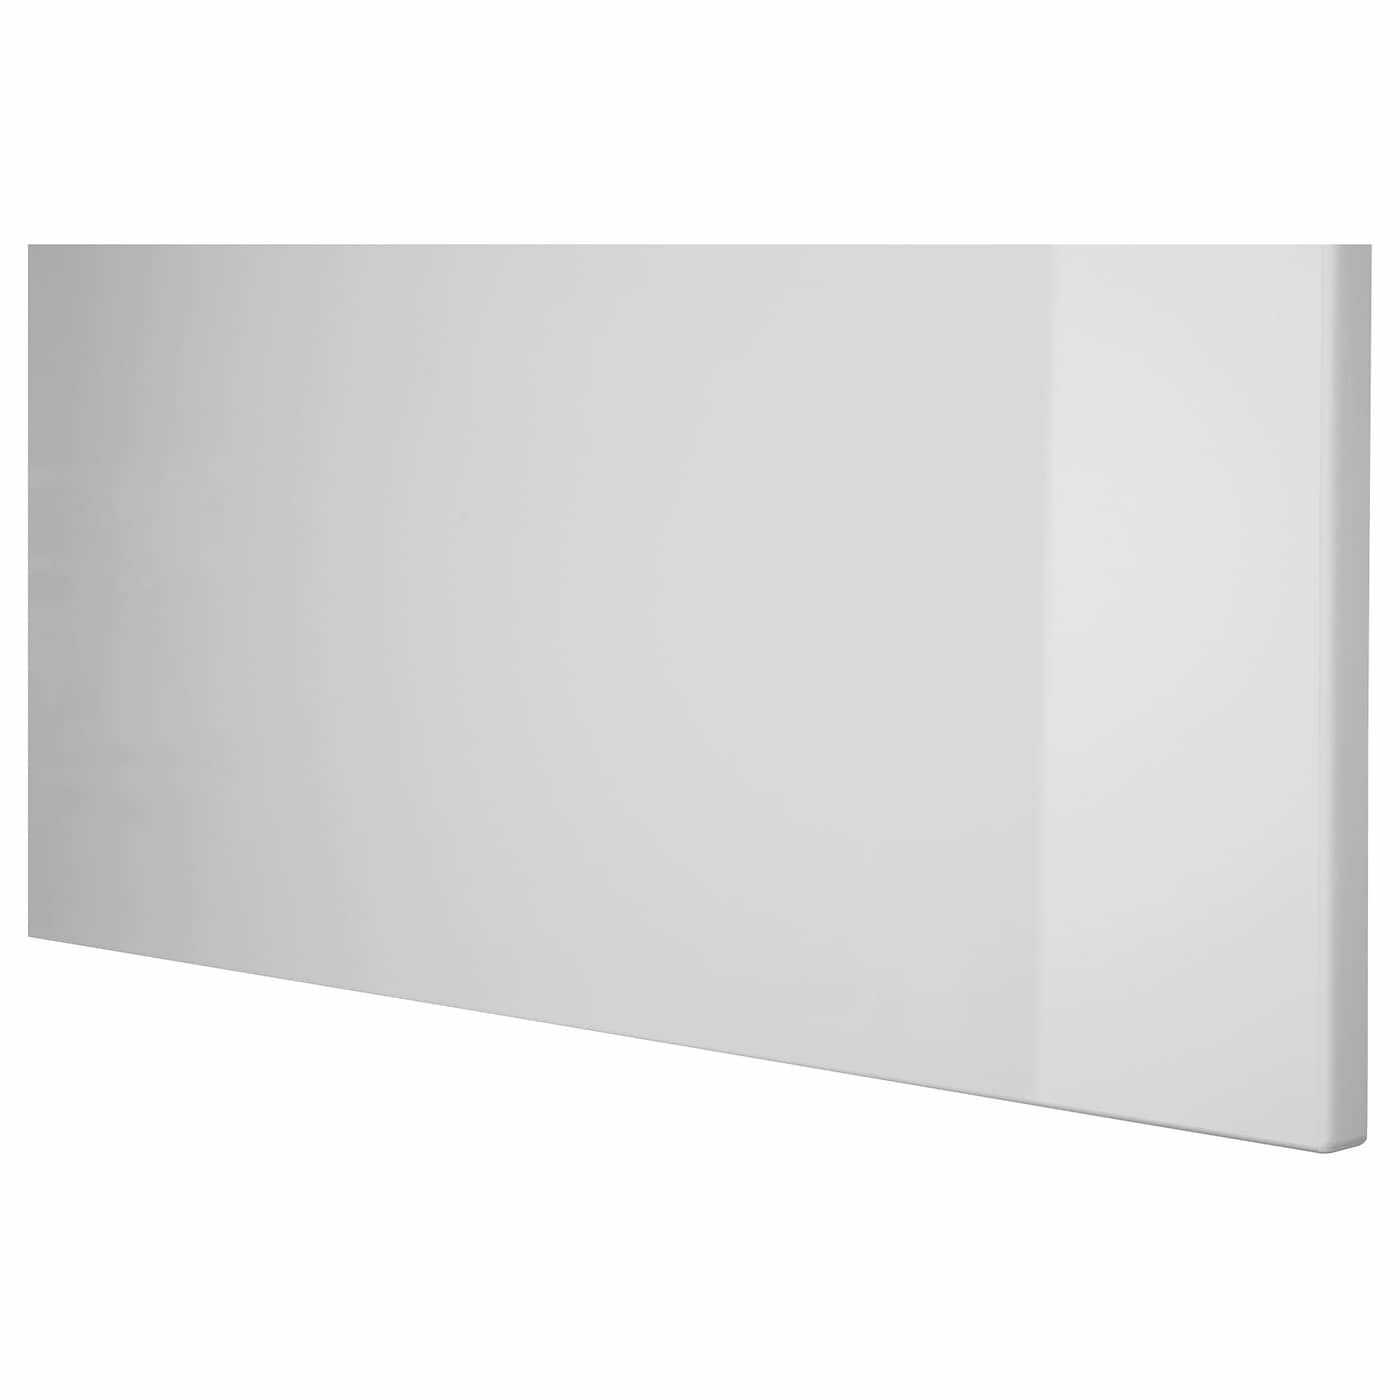 Фронтальная панель ящика IKEA RINGHULT рингульт 40x20 серый